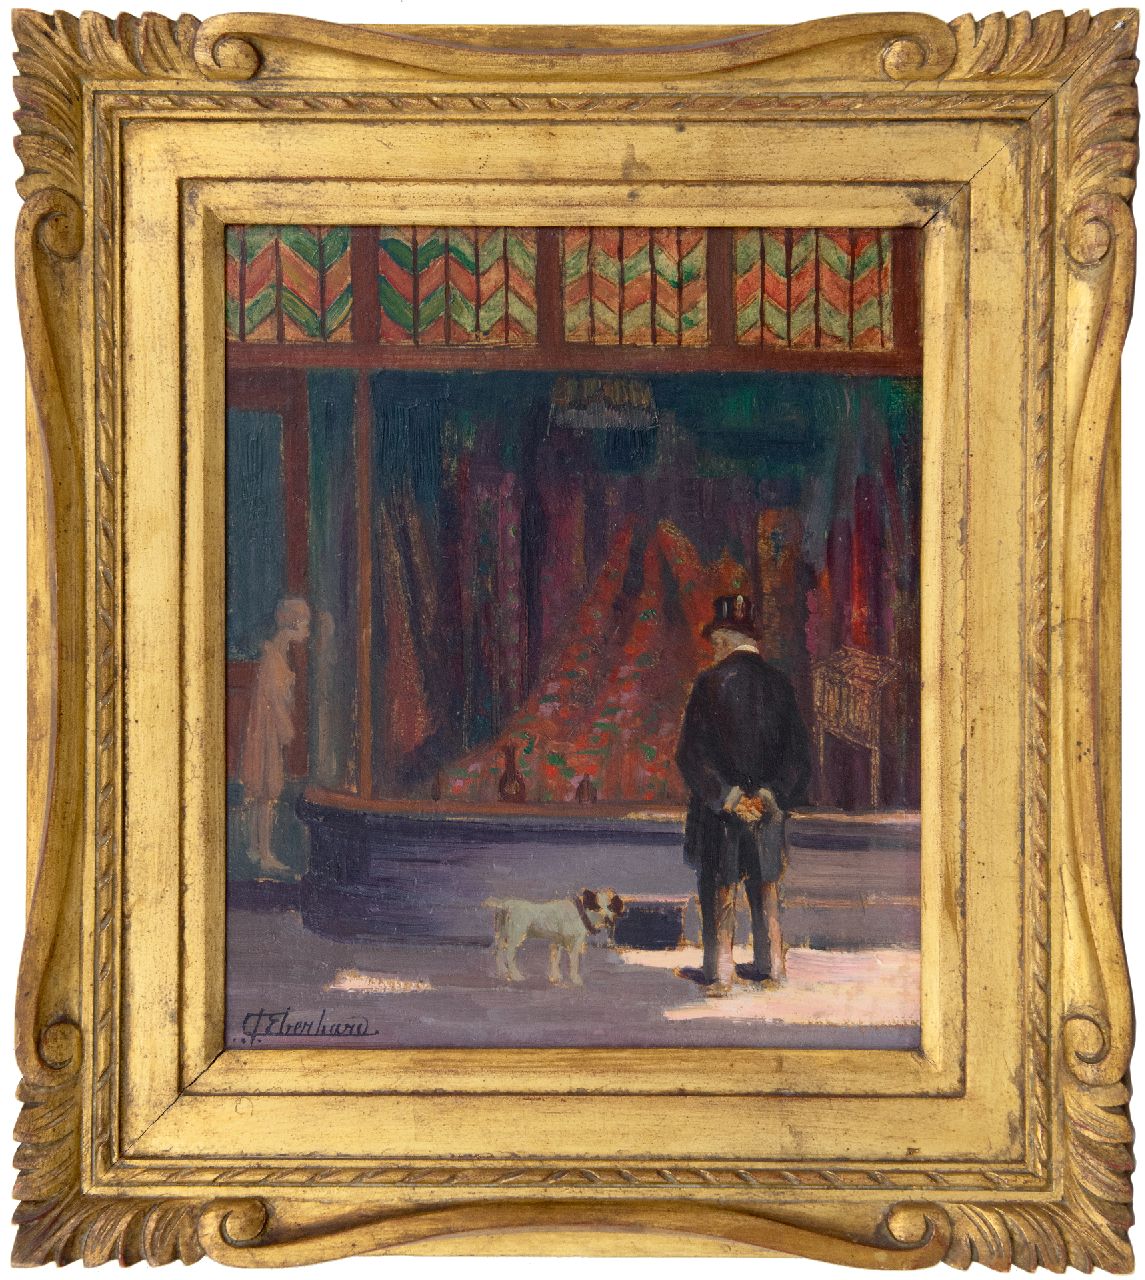 Eberhard G.G.A.  | Guillaume Gustave Antoine Eberhard, Voor de etalage, olieverf op paneel 34,8 x 29,7 cm, gesigneerd linksonder